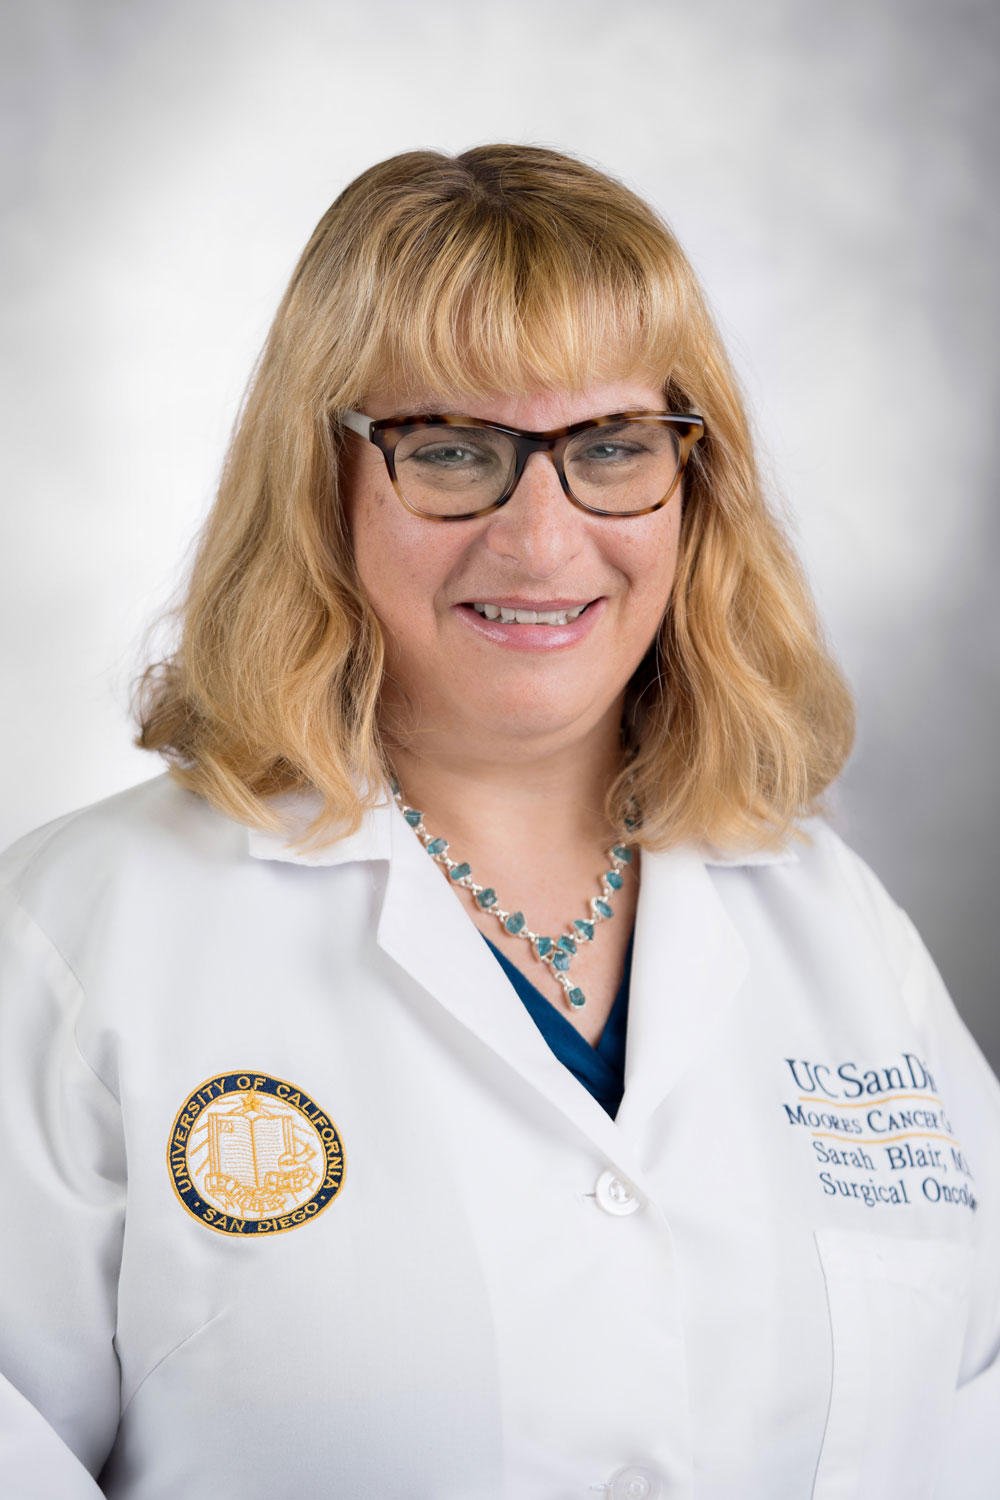 Dr. Sarah L. Blair, MD